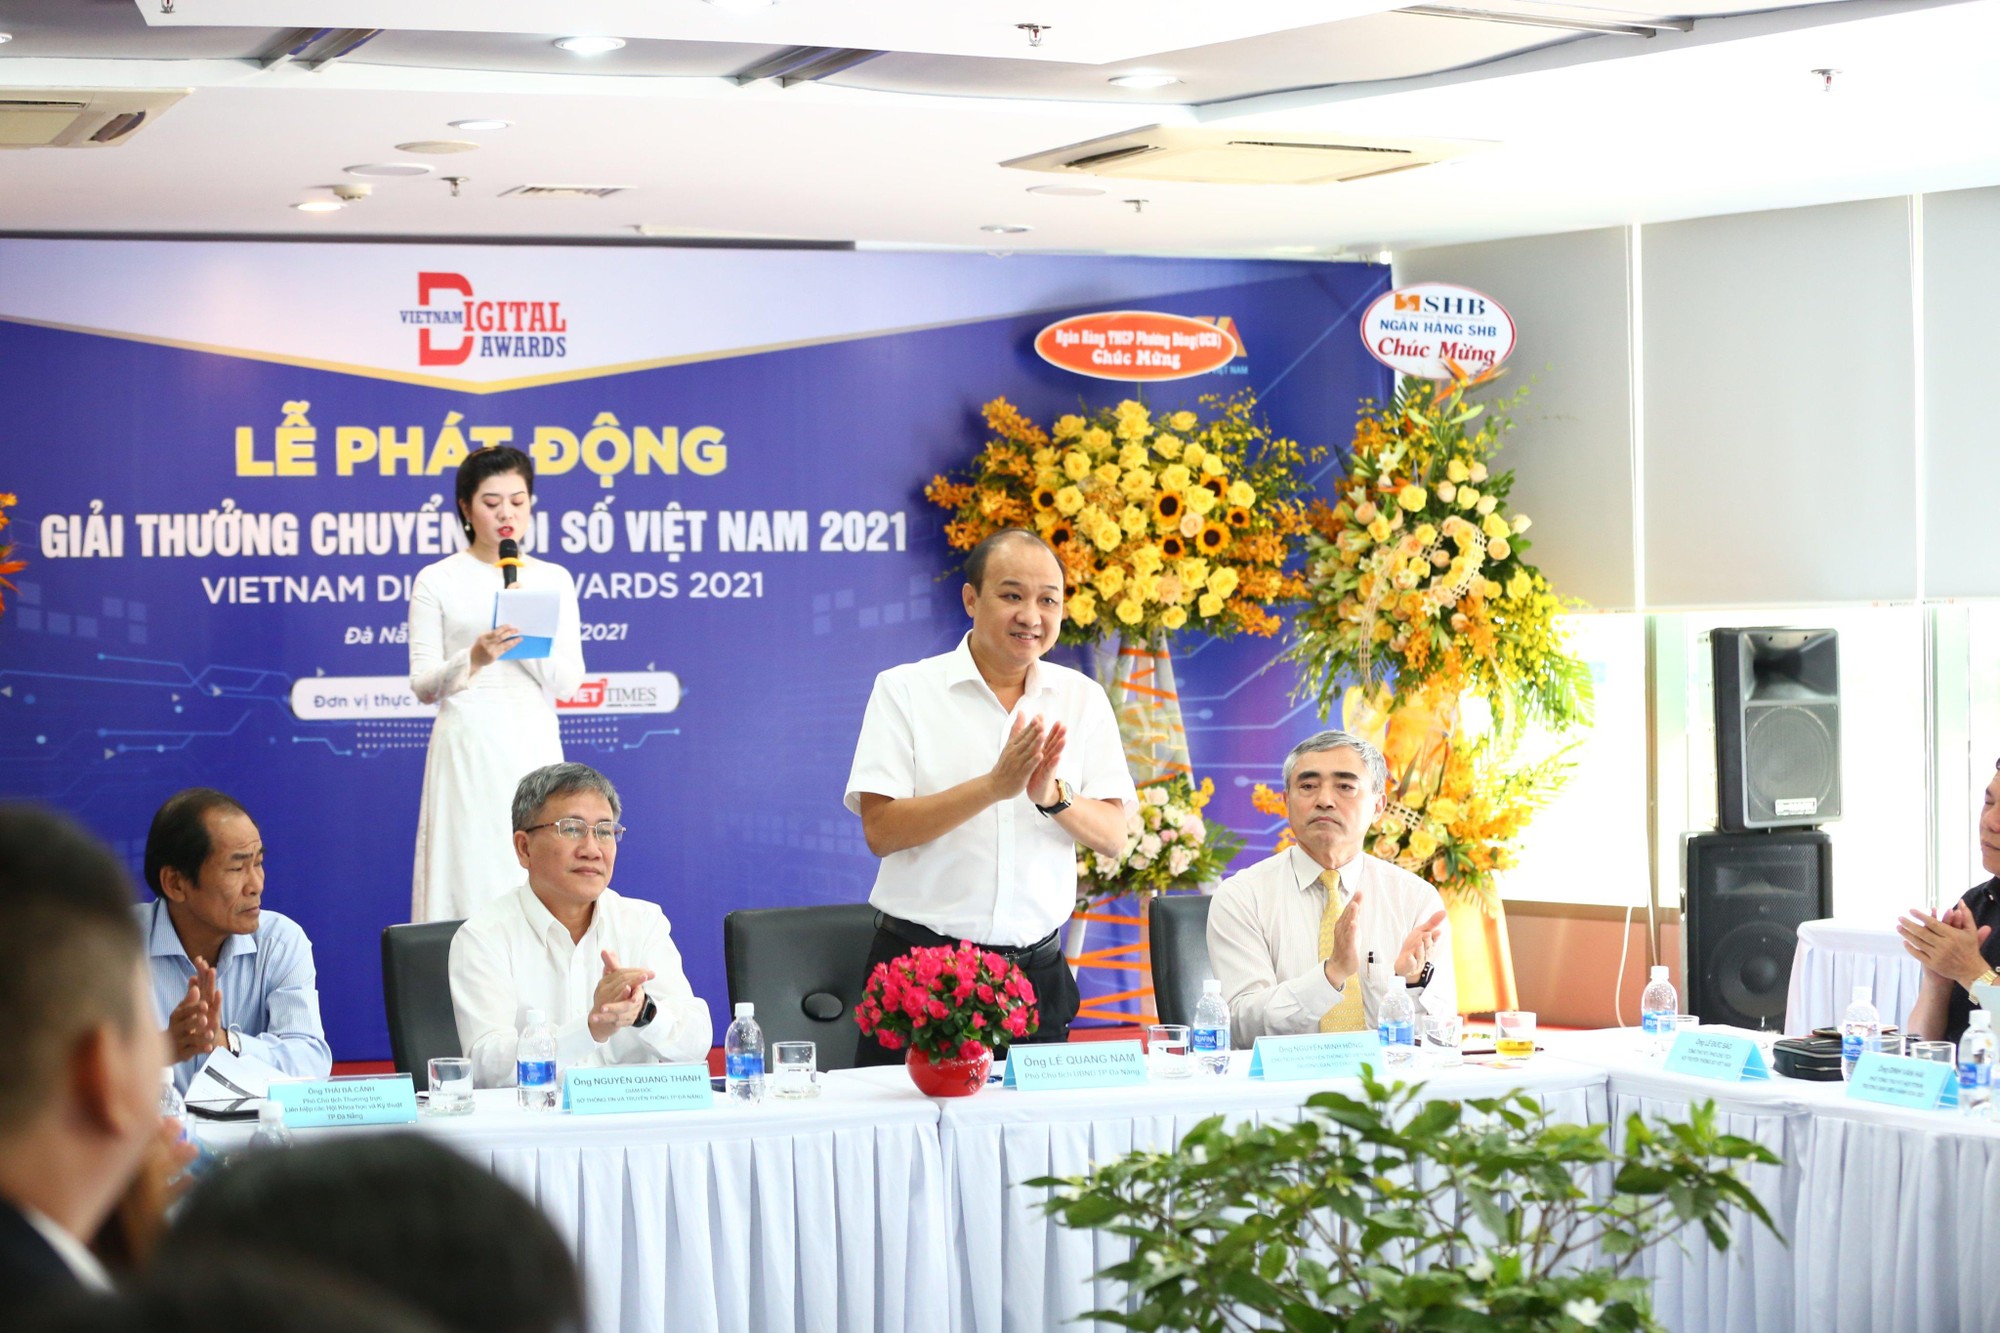 Ông Lê Quang Nam, Phó Chủ tịch UBND thành phố Đà Nẵng phát biểu tại Lễ phát động Giải thưởng Chuyển đổi số Việt Nam 2021